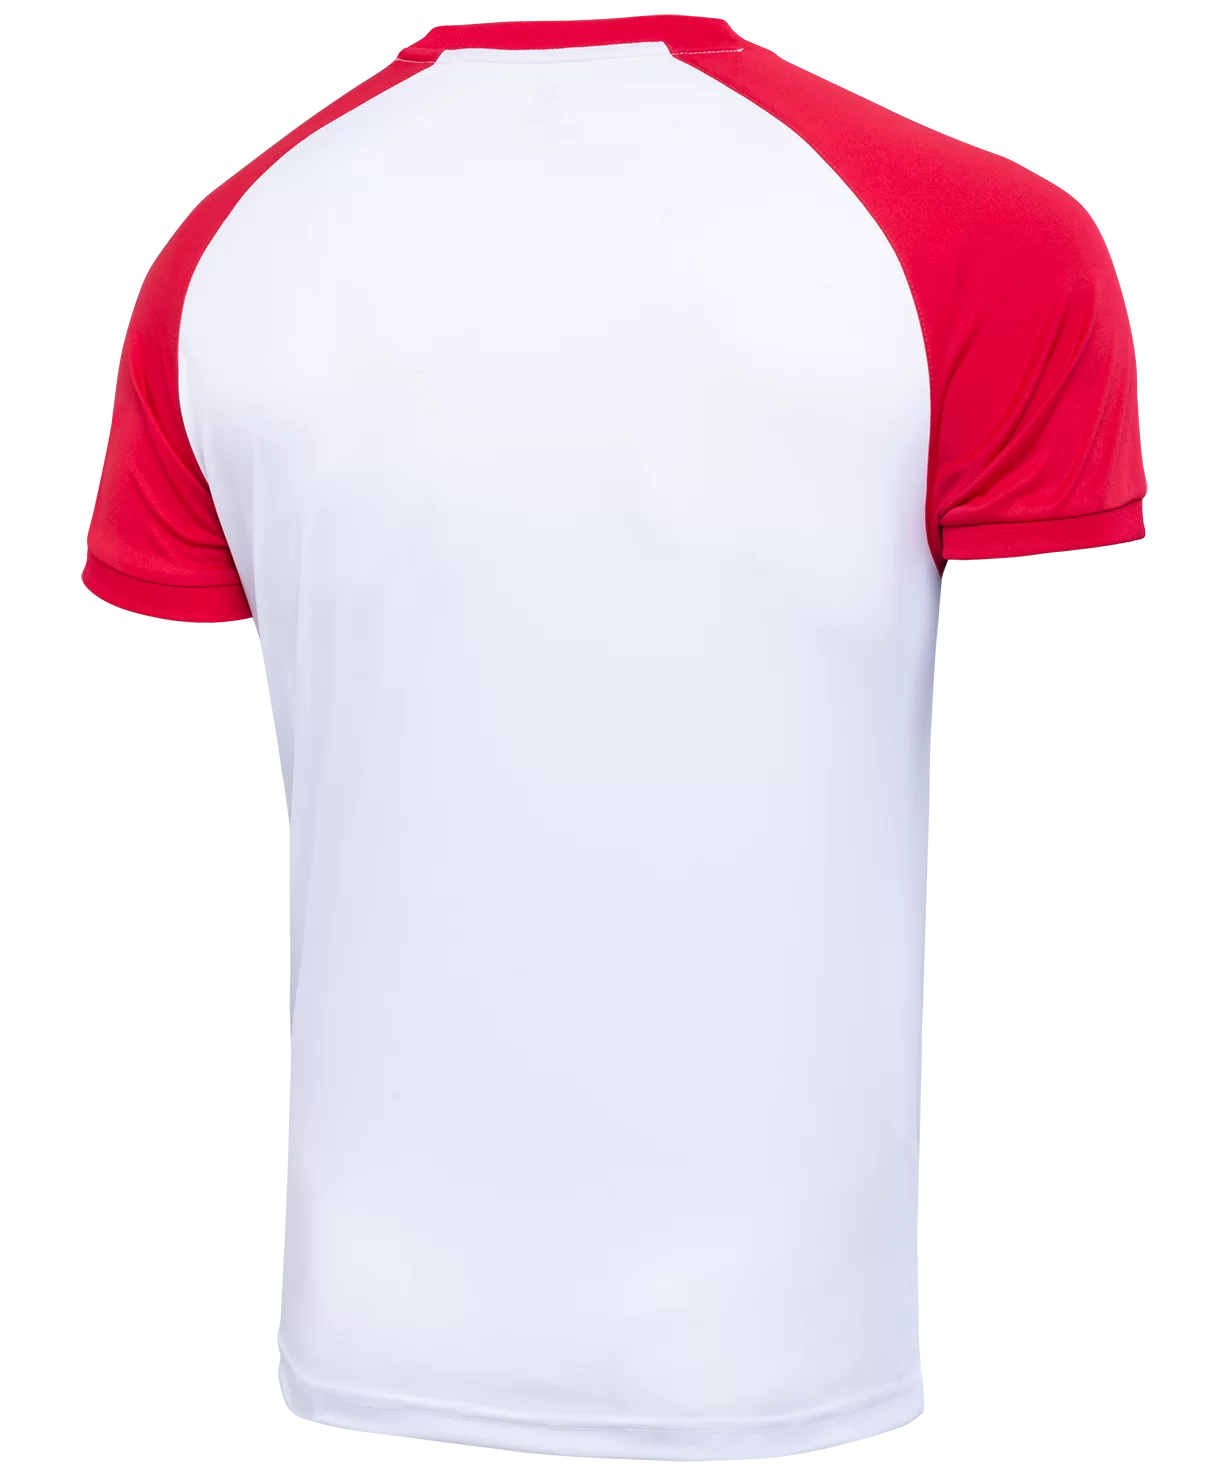 Реальное фото Футболка игровая CAMP Reglan Jersey, белый/красный, детский Jögel от магазина Спортев